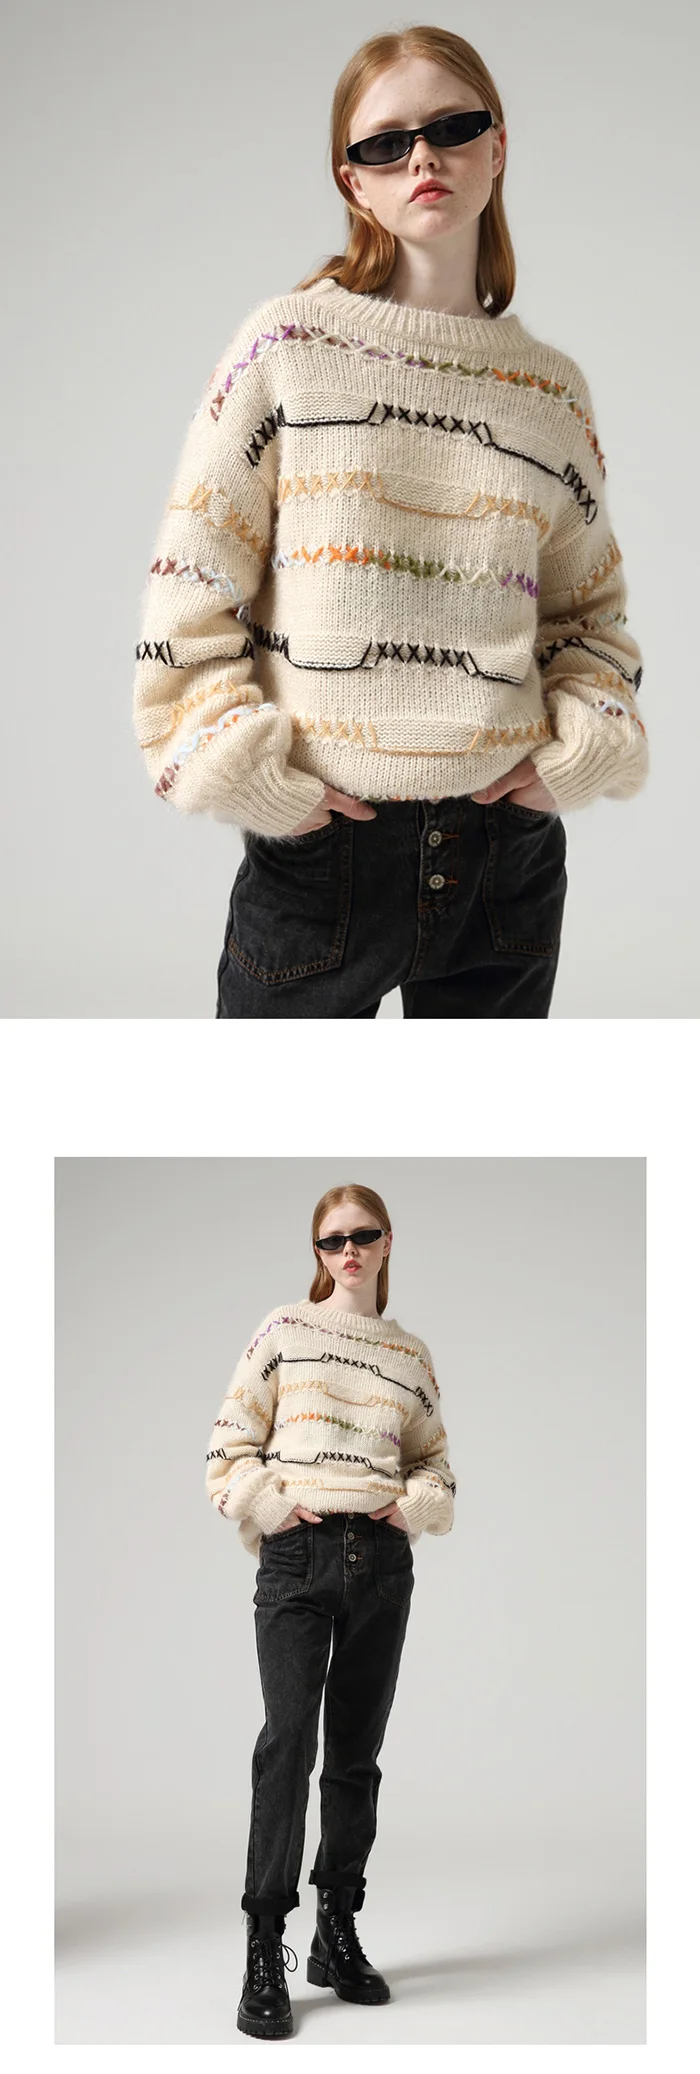 Toyouth модные Лоскутные Свитера с длинным рукавом для женщин, стильные пуловеры хитовых цветов